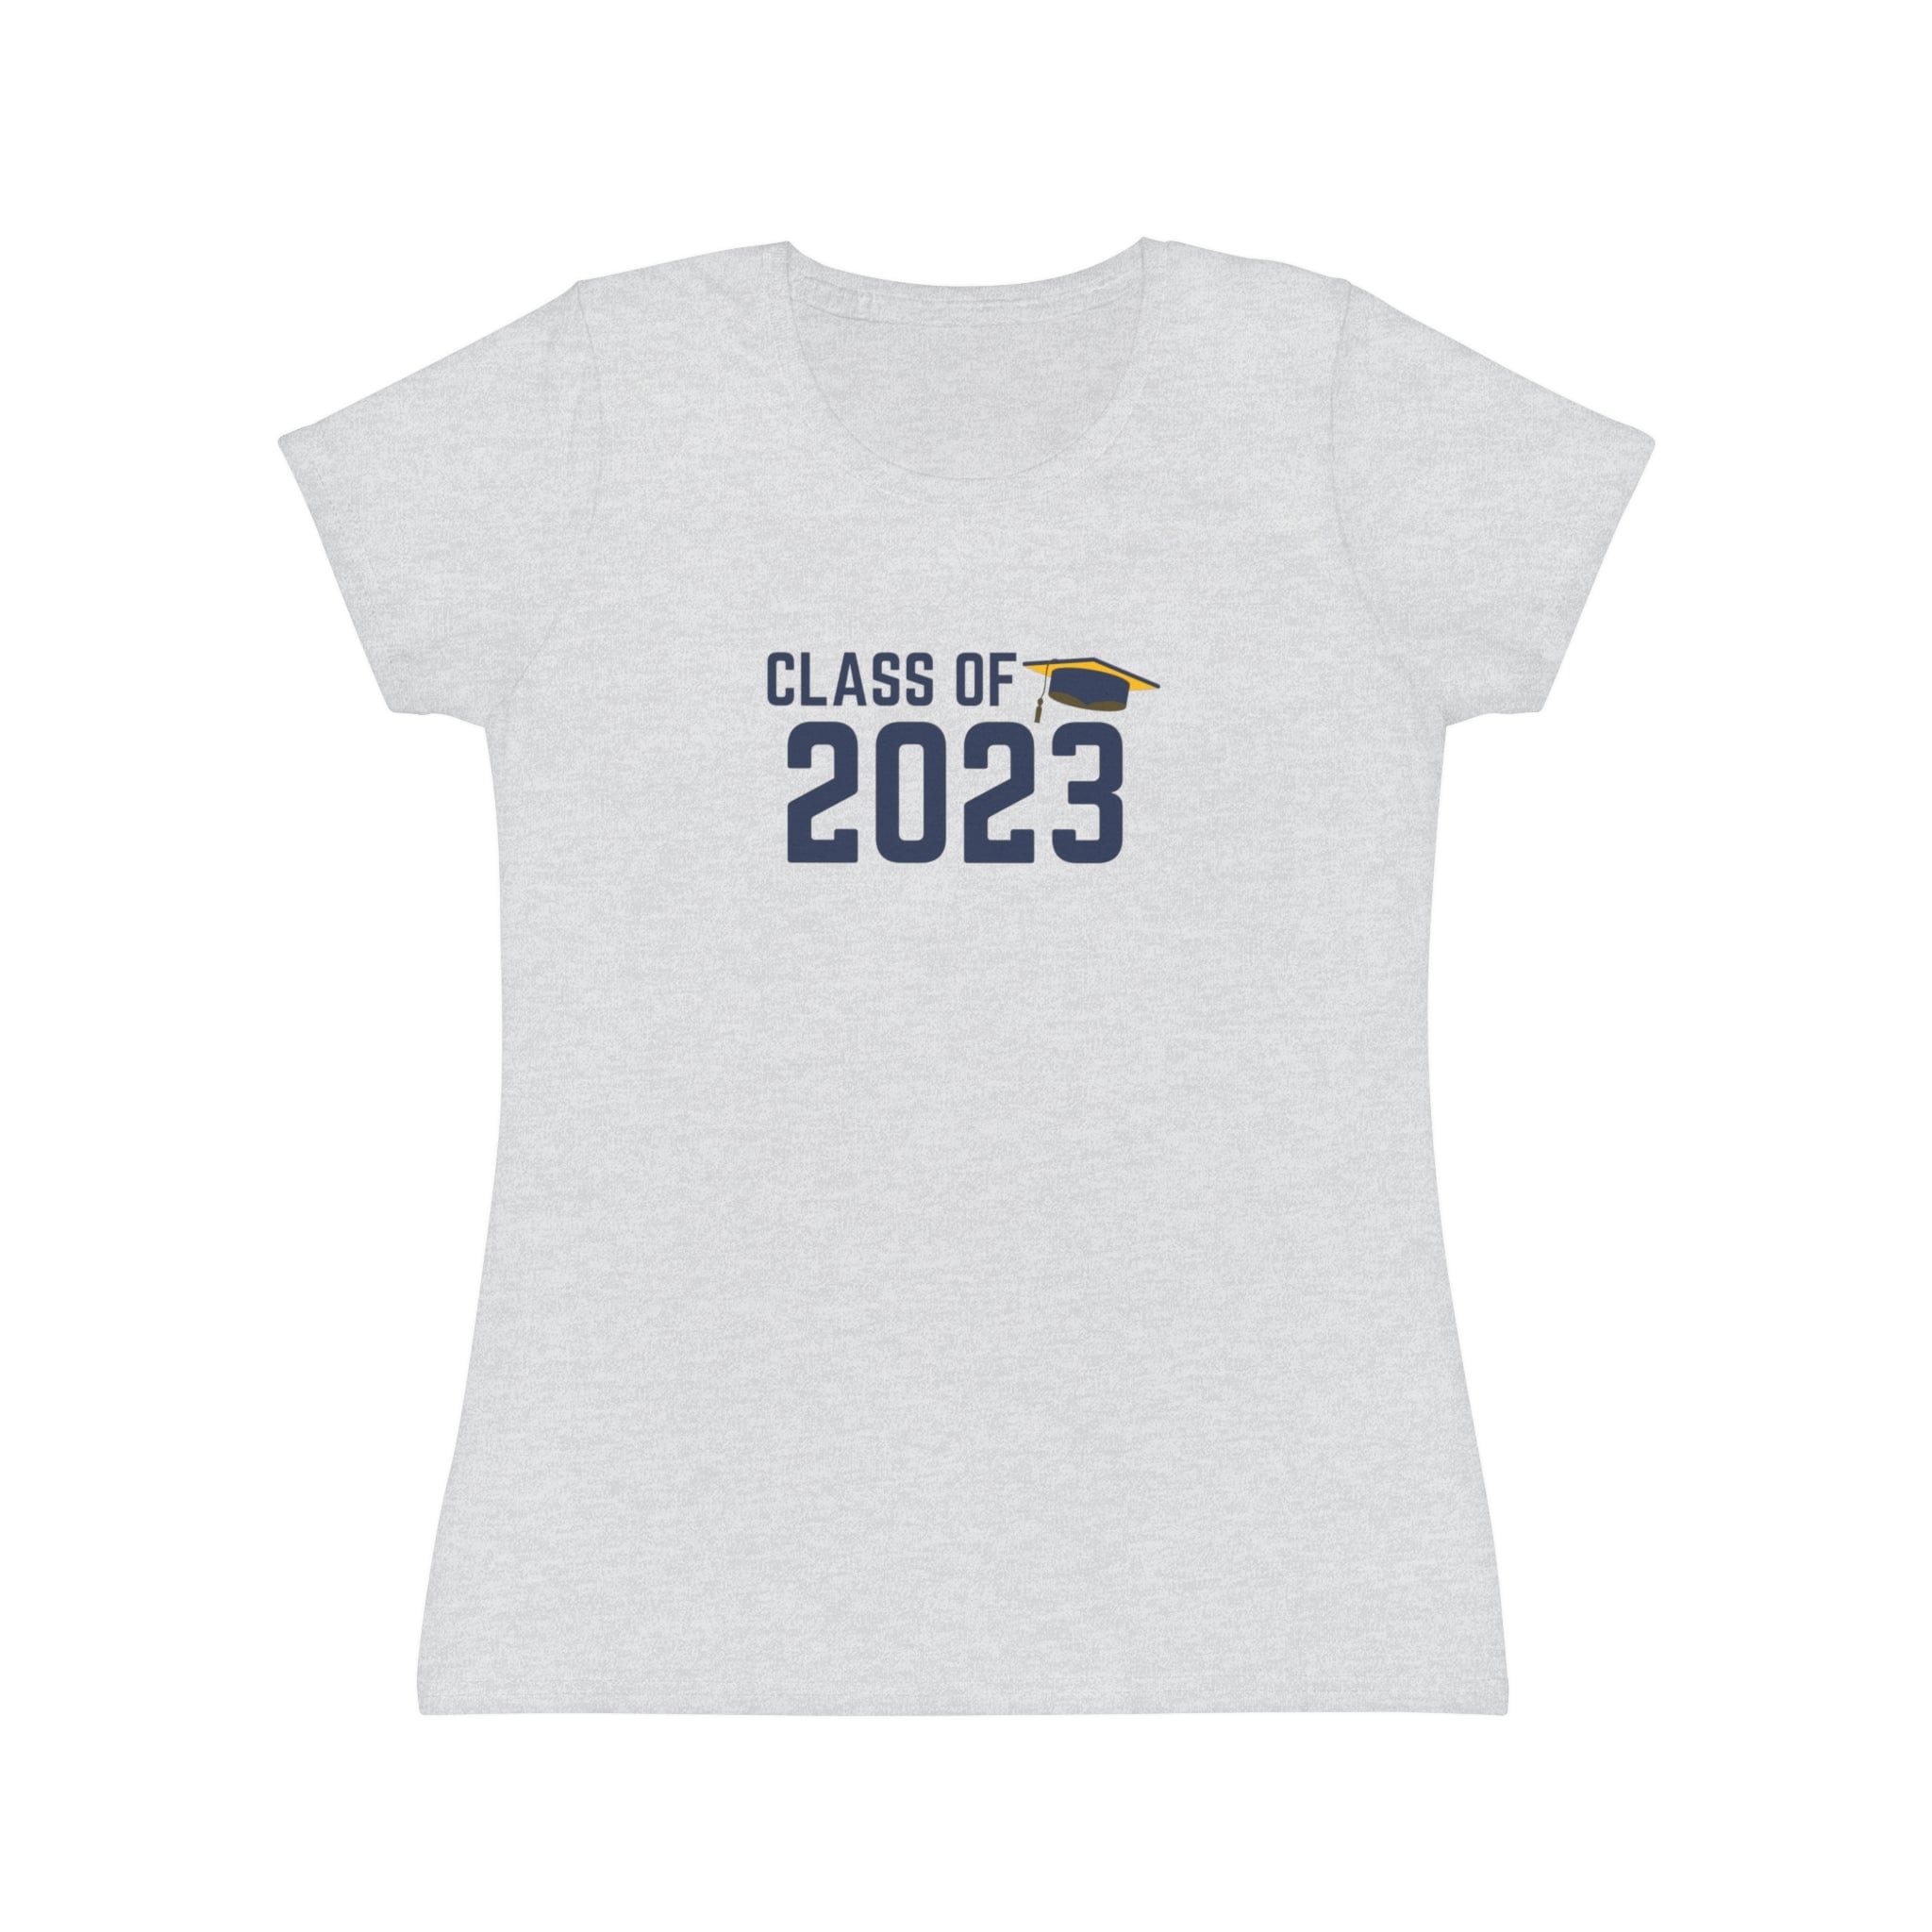 Printify T-Shirt Heather Grey / XS Class of 2023! - Women's Iconic T-Shirt